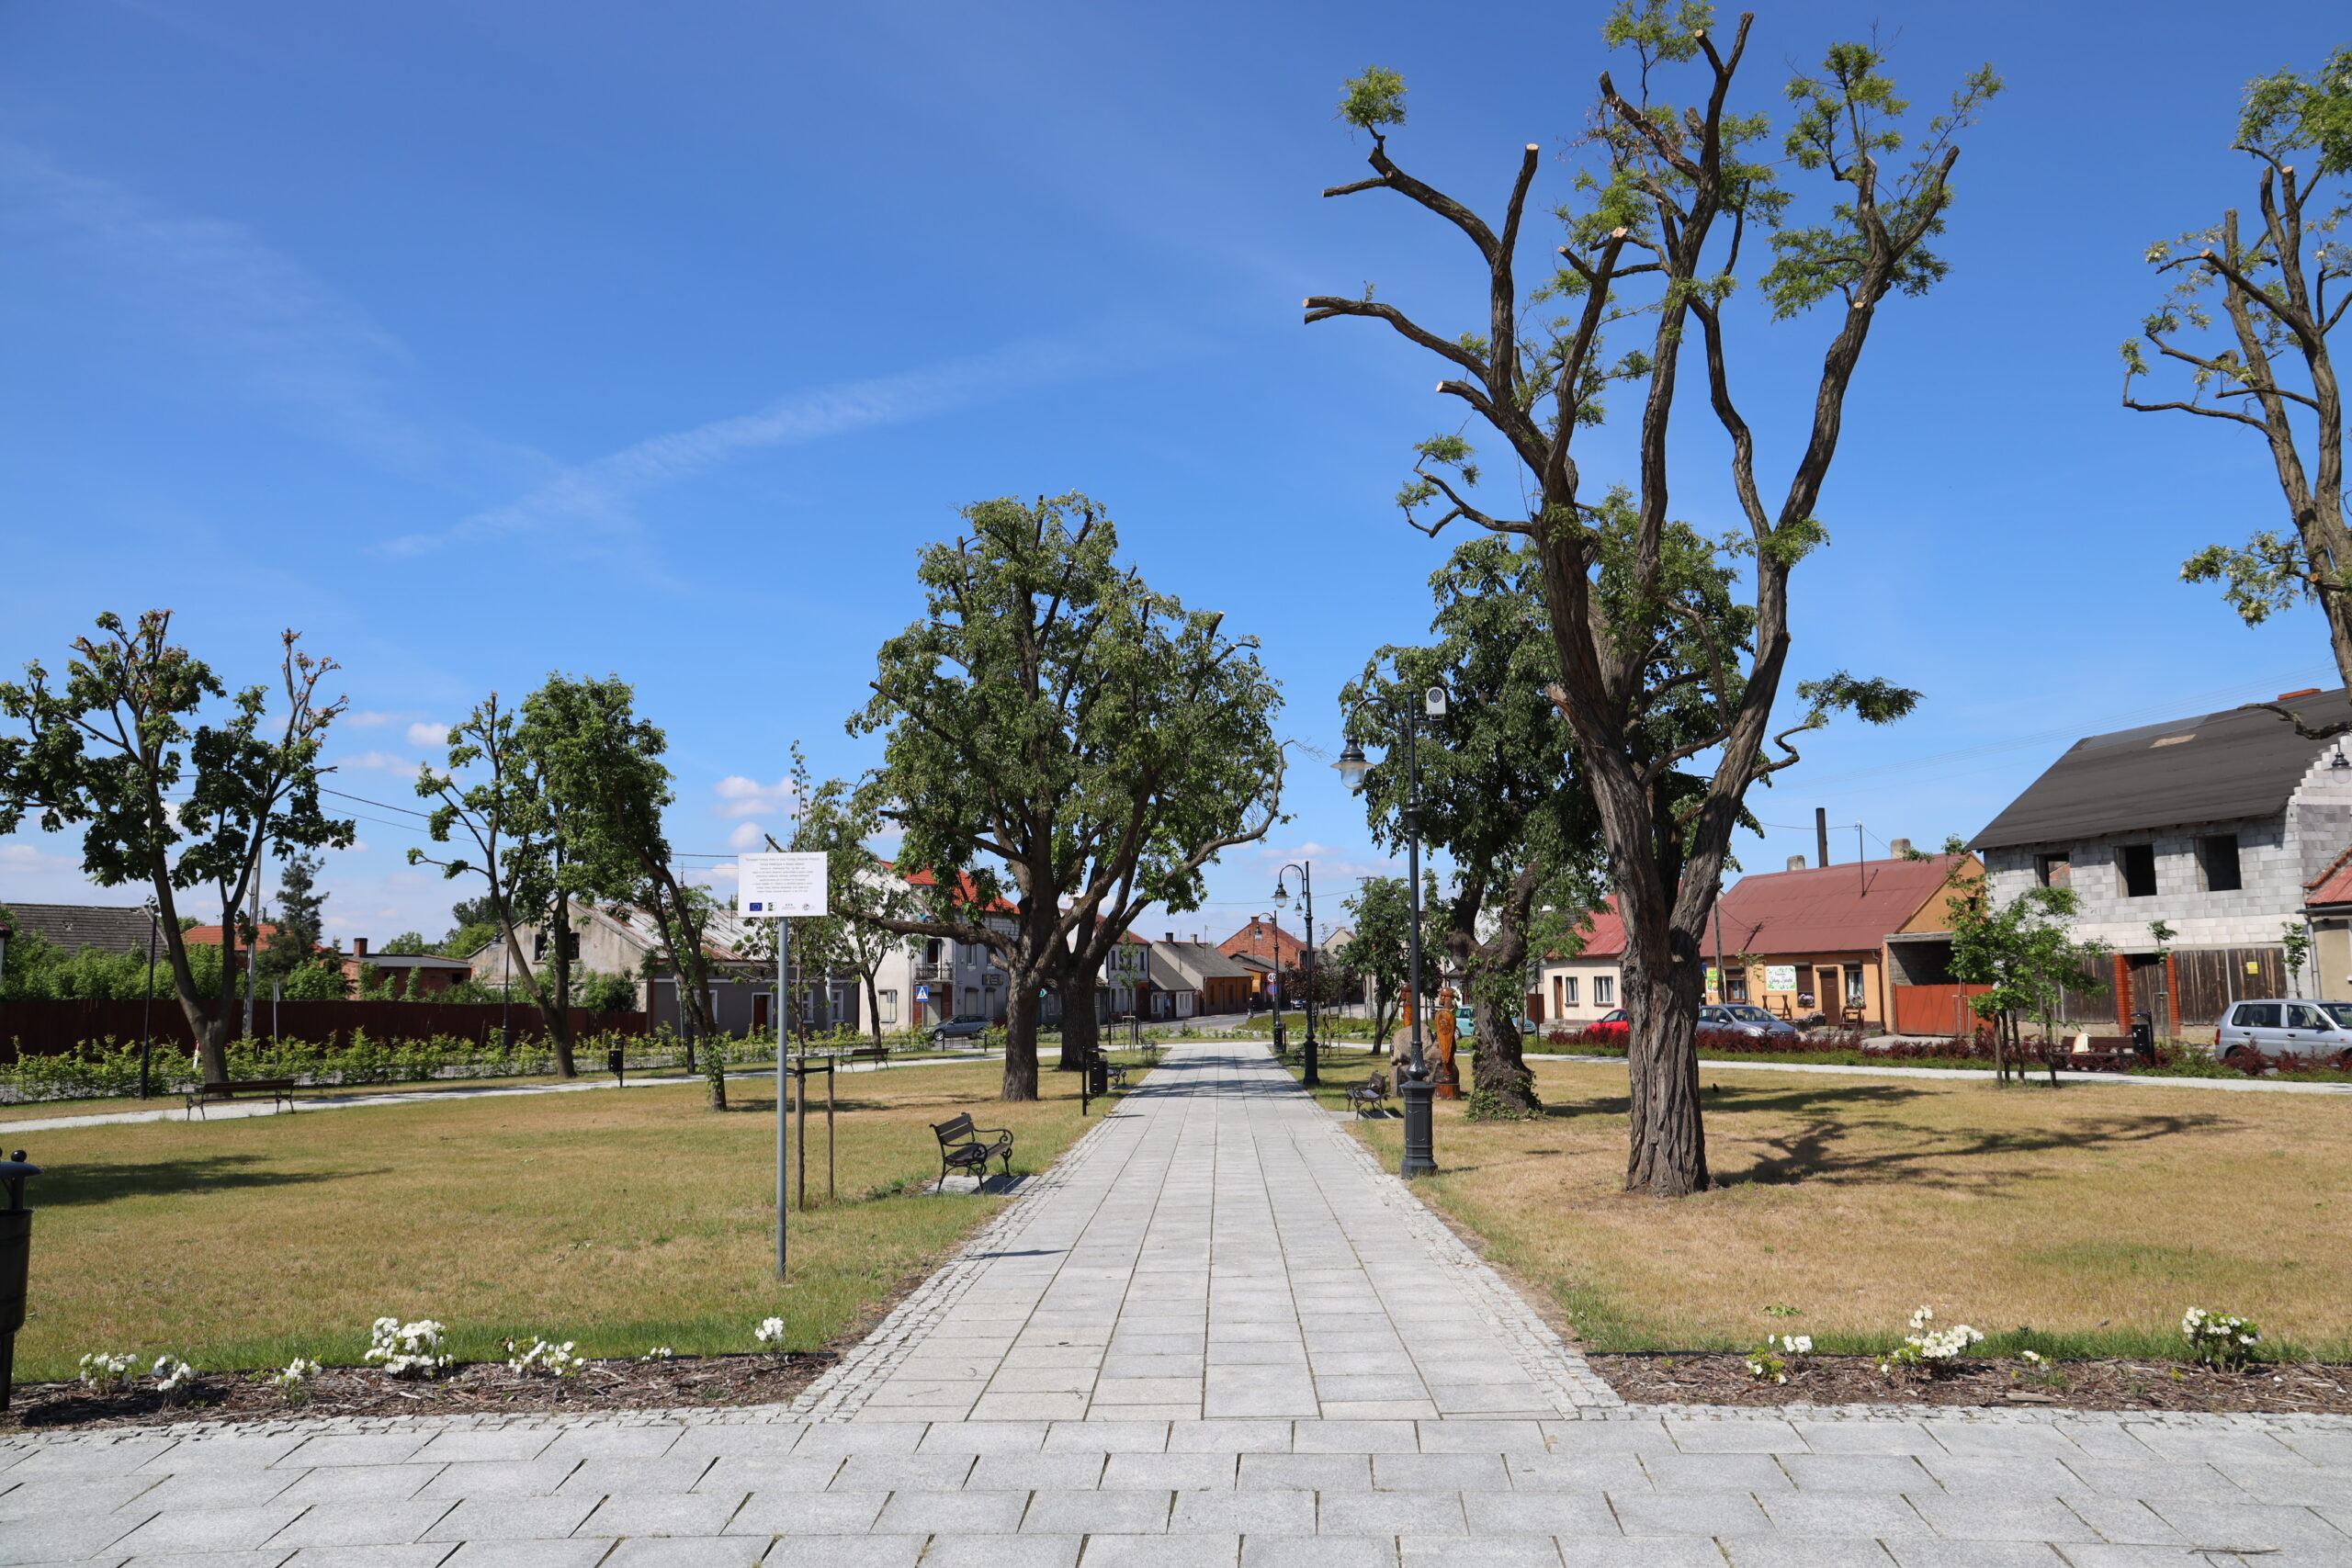 Mała wieś w Wielkopolsce dostanie 2,3 mln na rewitalizację małego parku.